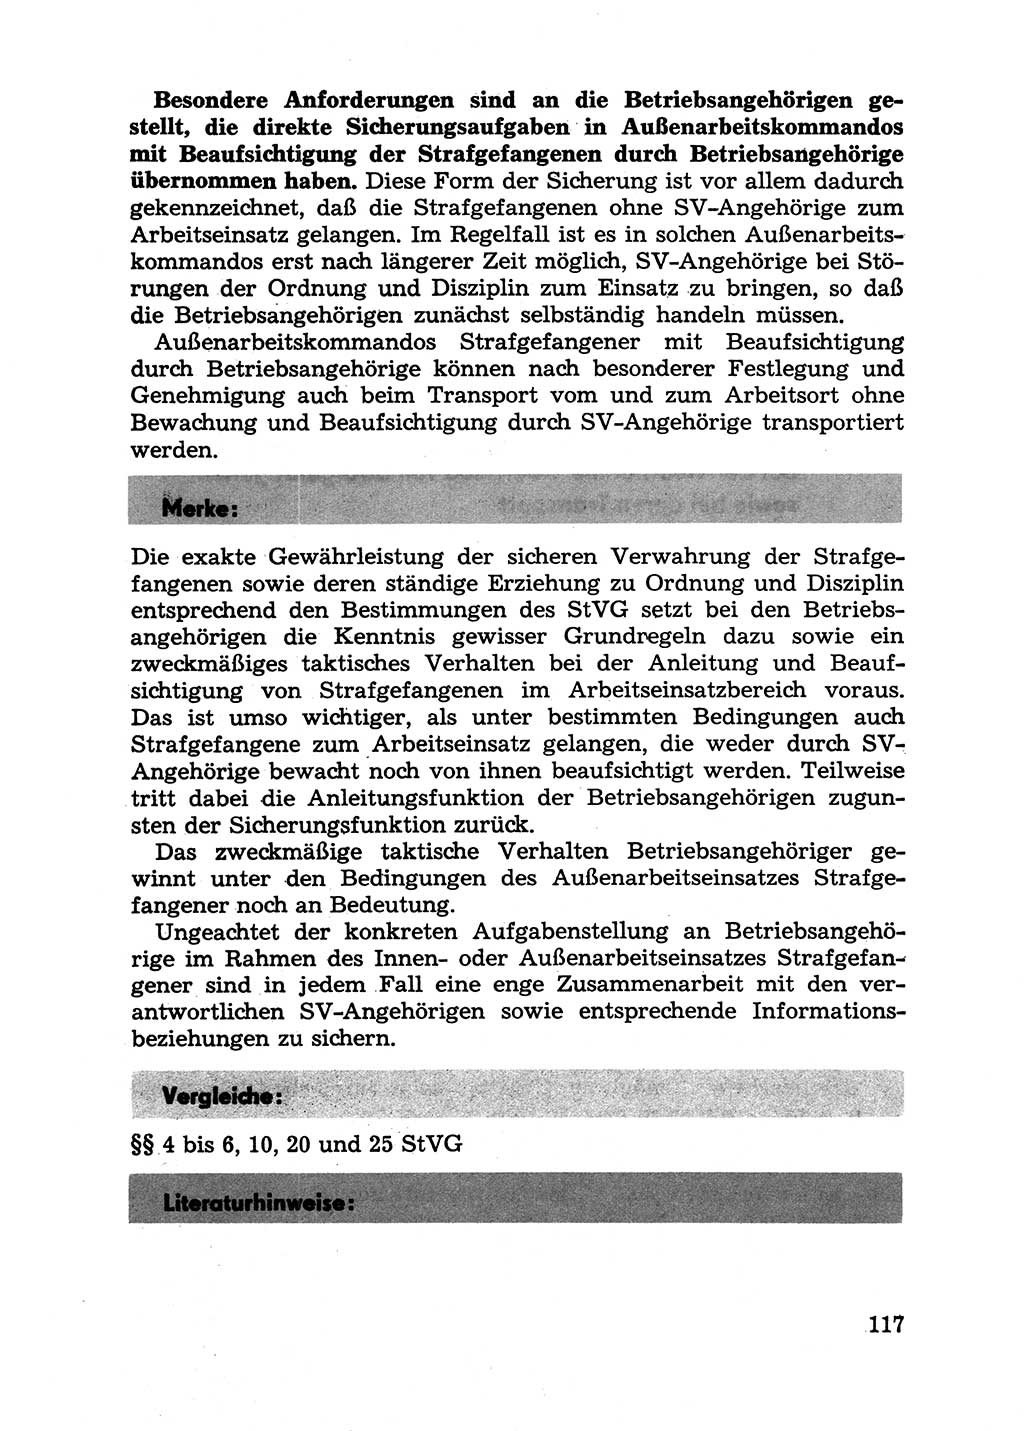 Handbuch für Betriebsangehörige, Abteilung Strafvollzug (SV) [Ministerium des Innern (MdI) Deutsche Demokratische Republik (DDR)] 1981, Seite 117 (Hb. BA Abt. SV MdI DDR 1981, S. 117)